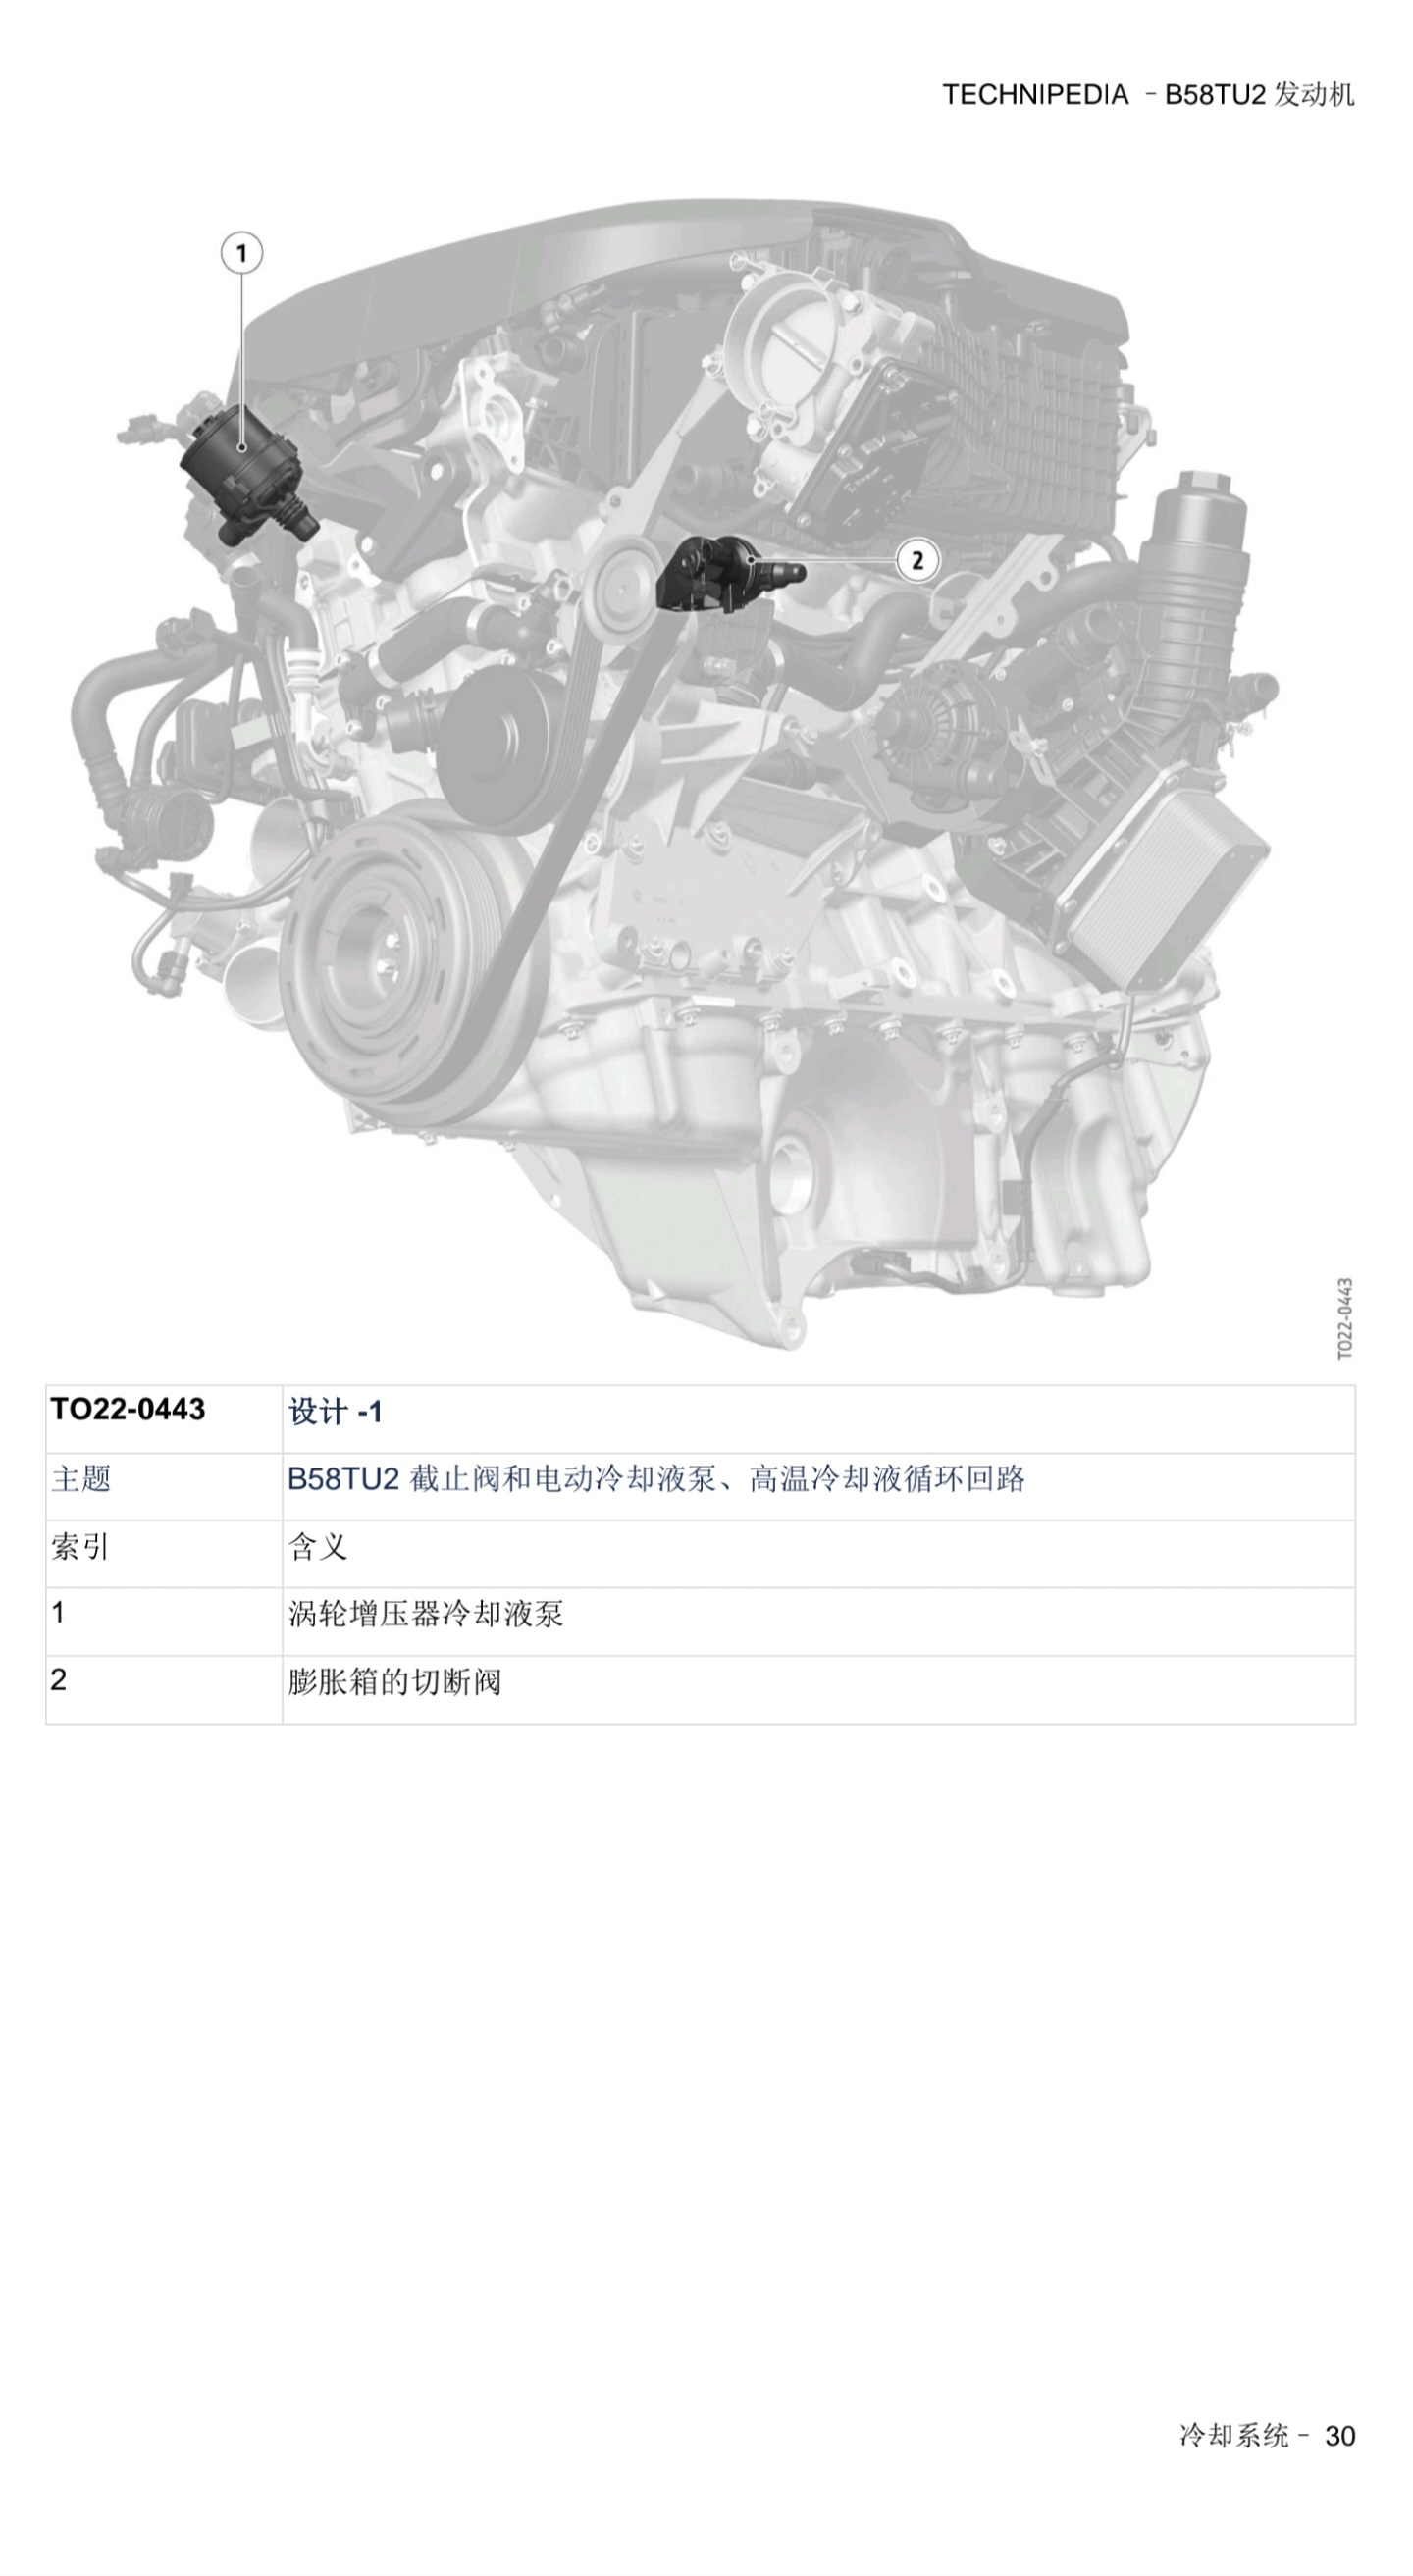 宝马 B58TU2发动机 技术百科